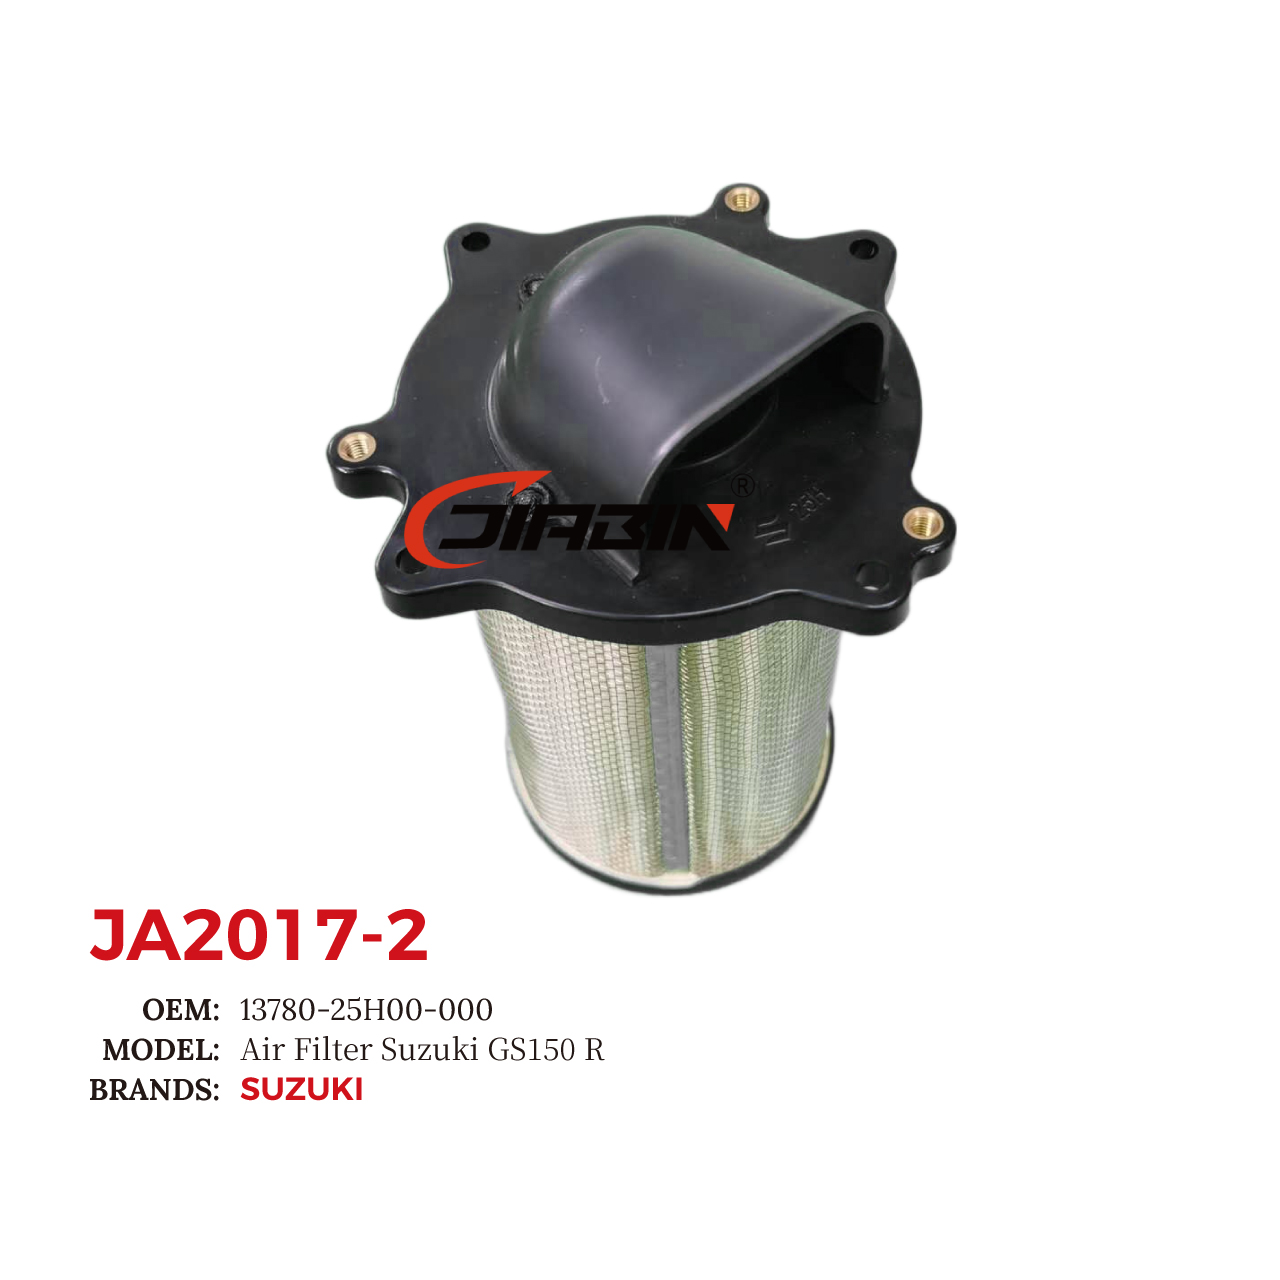 images/JA2017-2/JA2017-2_JB_4.jpg